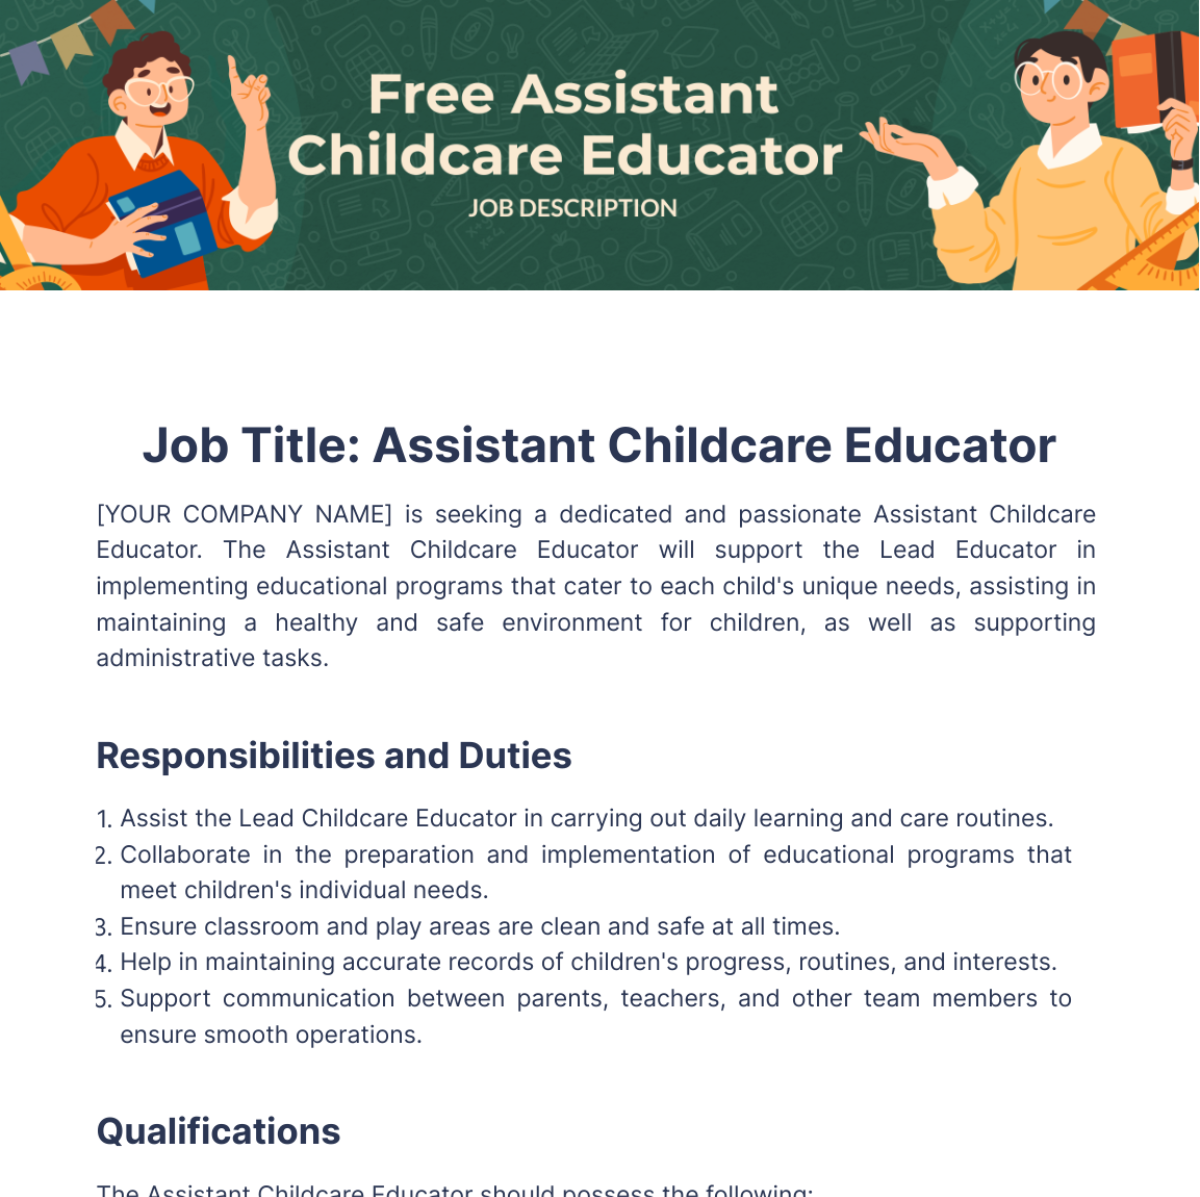 Free Assistant Childcare Educator Job Description Template